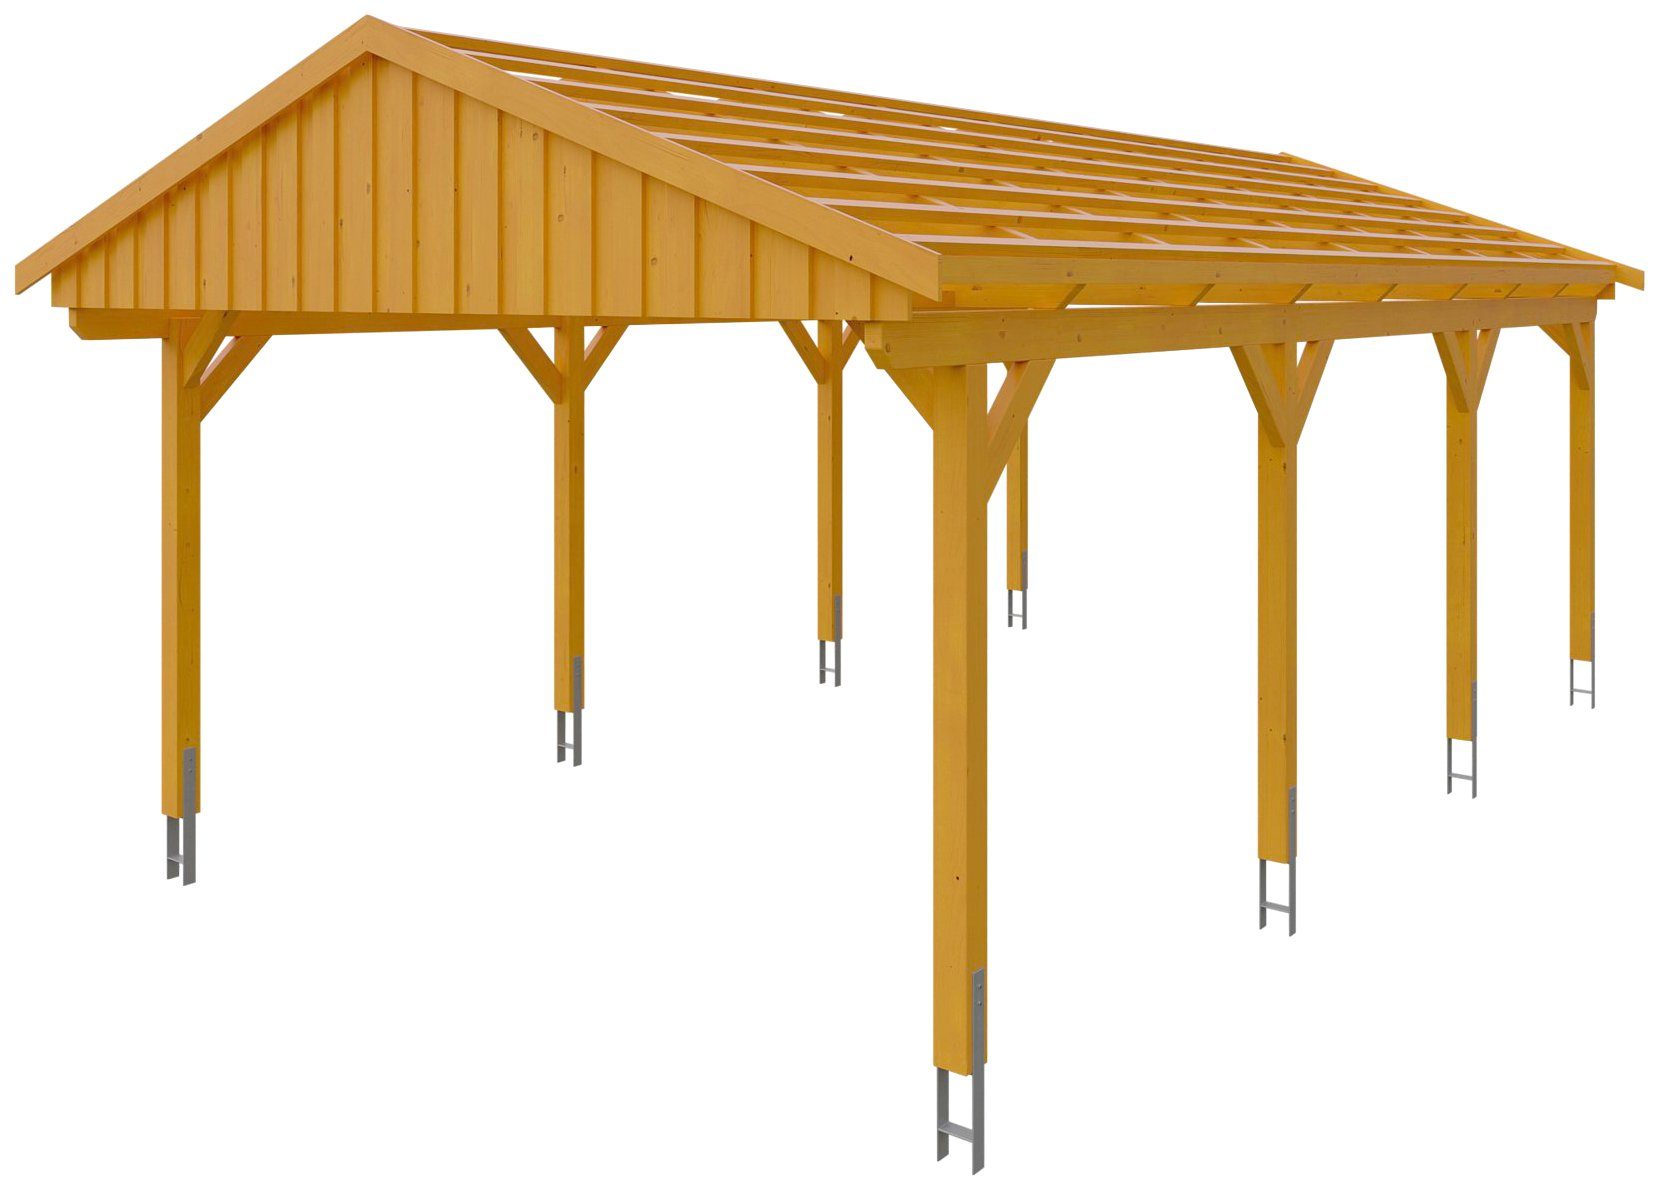 Skanholz Einzelcarport Fichtelberg, BxT: 423x808 cm, 379 cm Einfahrtshöhe,  mit Dachlattung, Massive Konstruktion aus hochwertigem Leimholz (BSH-Fichte)